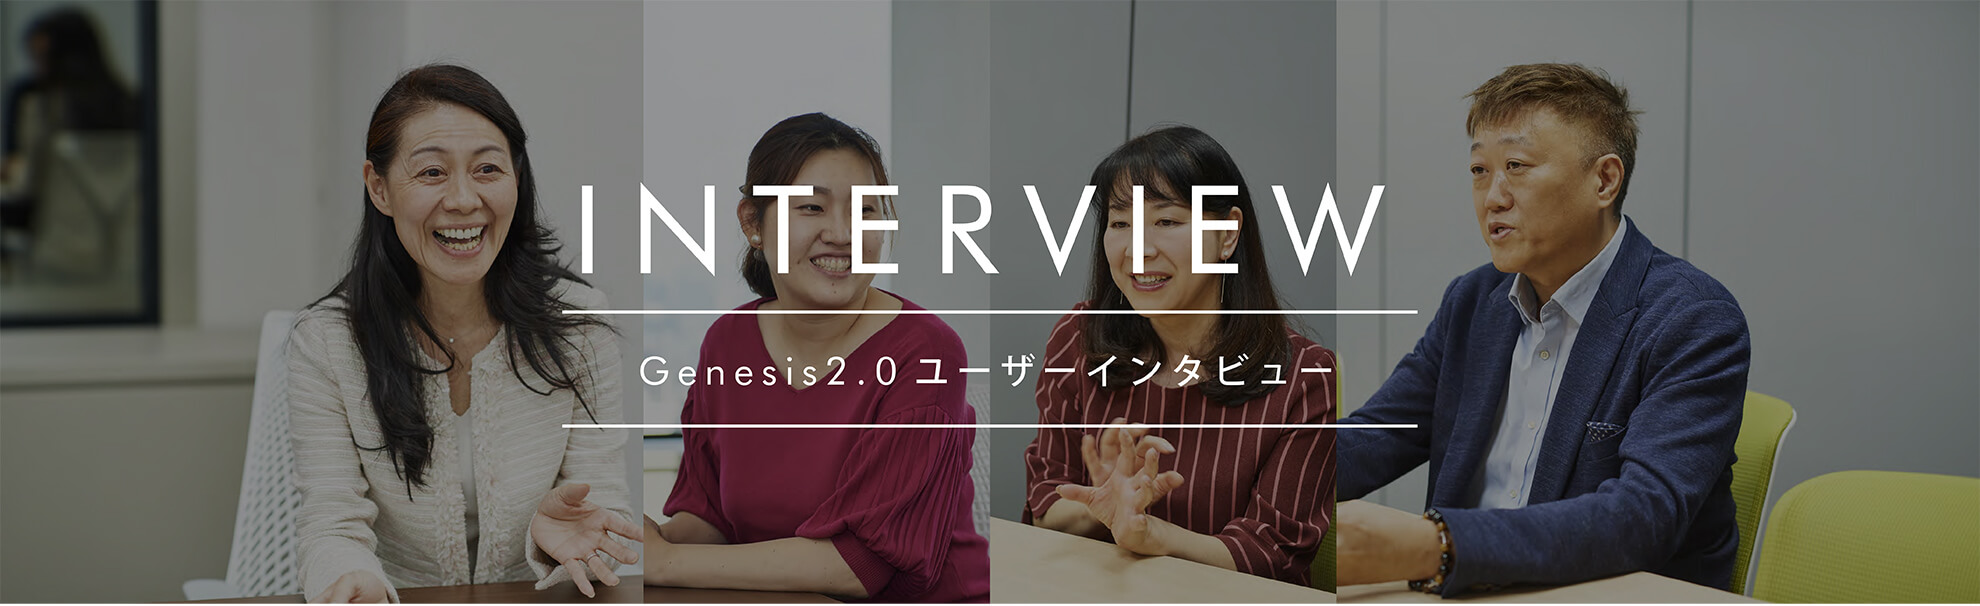 Genesis2.0ユーザーインタビュー